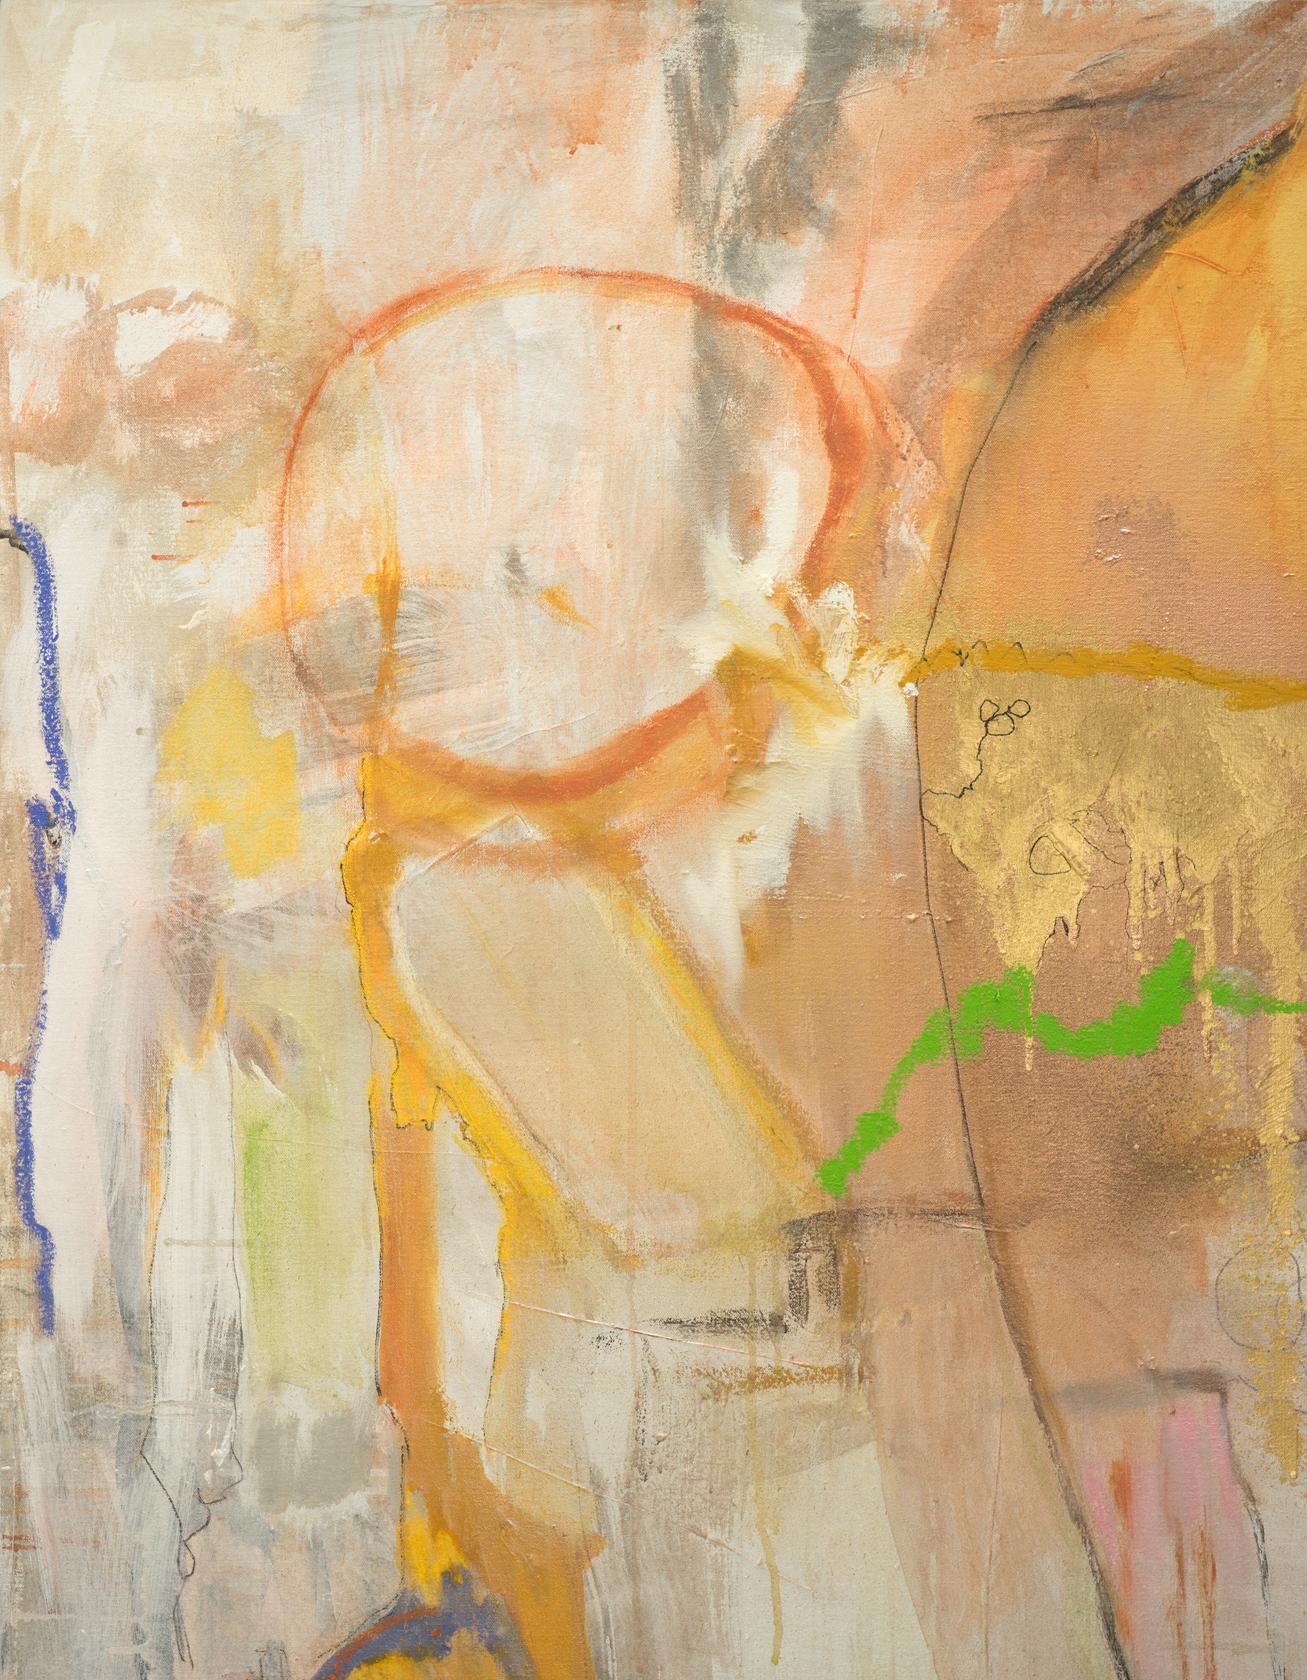 Née à New York, Kathi Robinson Frank a commencé à peindre dès son plus jeune âge. Pendant ses études secondaires, elle a étudié à l'Art Students League et a poursuivi sa passion au Bard College où elle a obtenu son BA. Ses premières influences sont